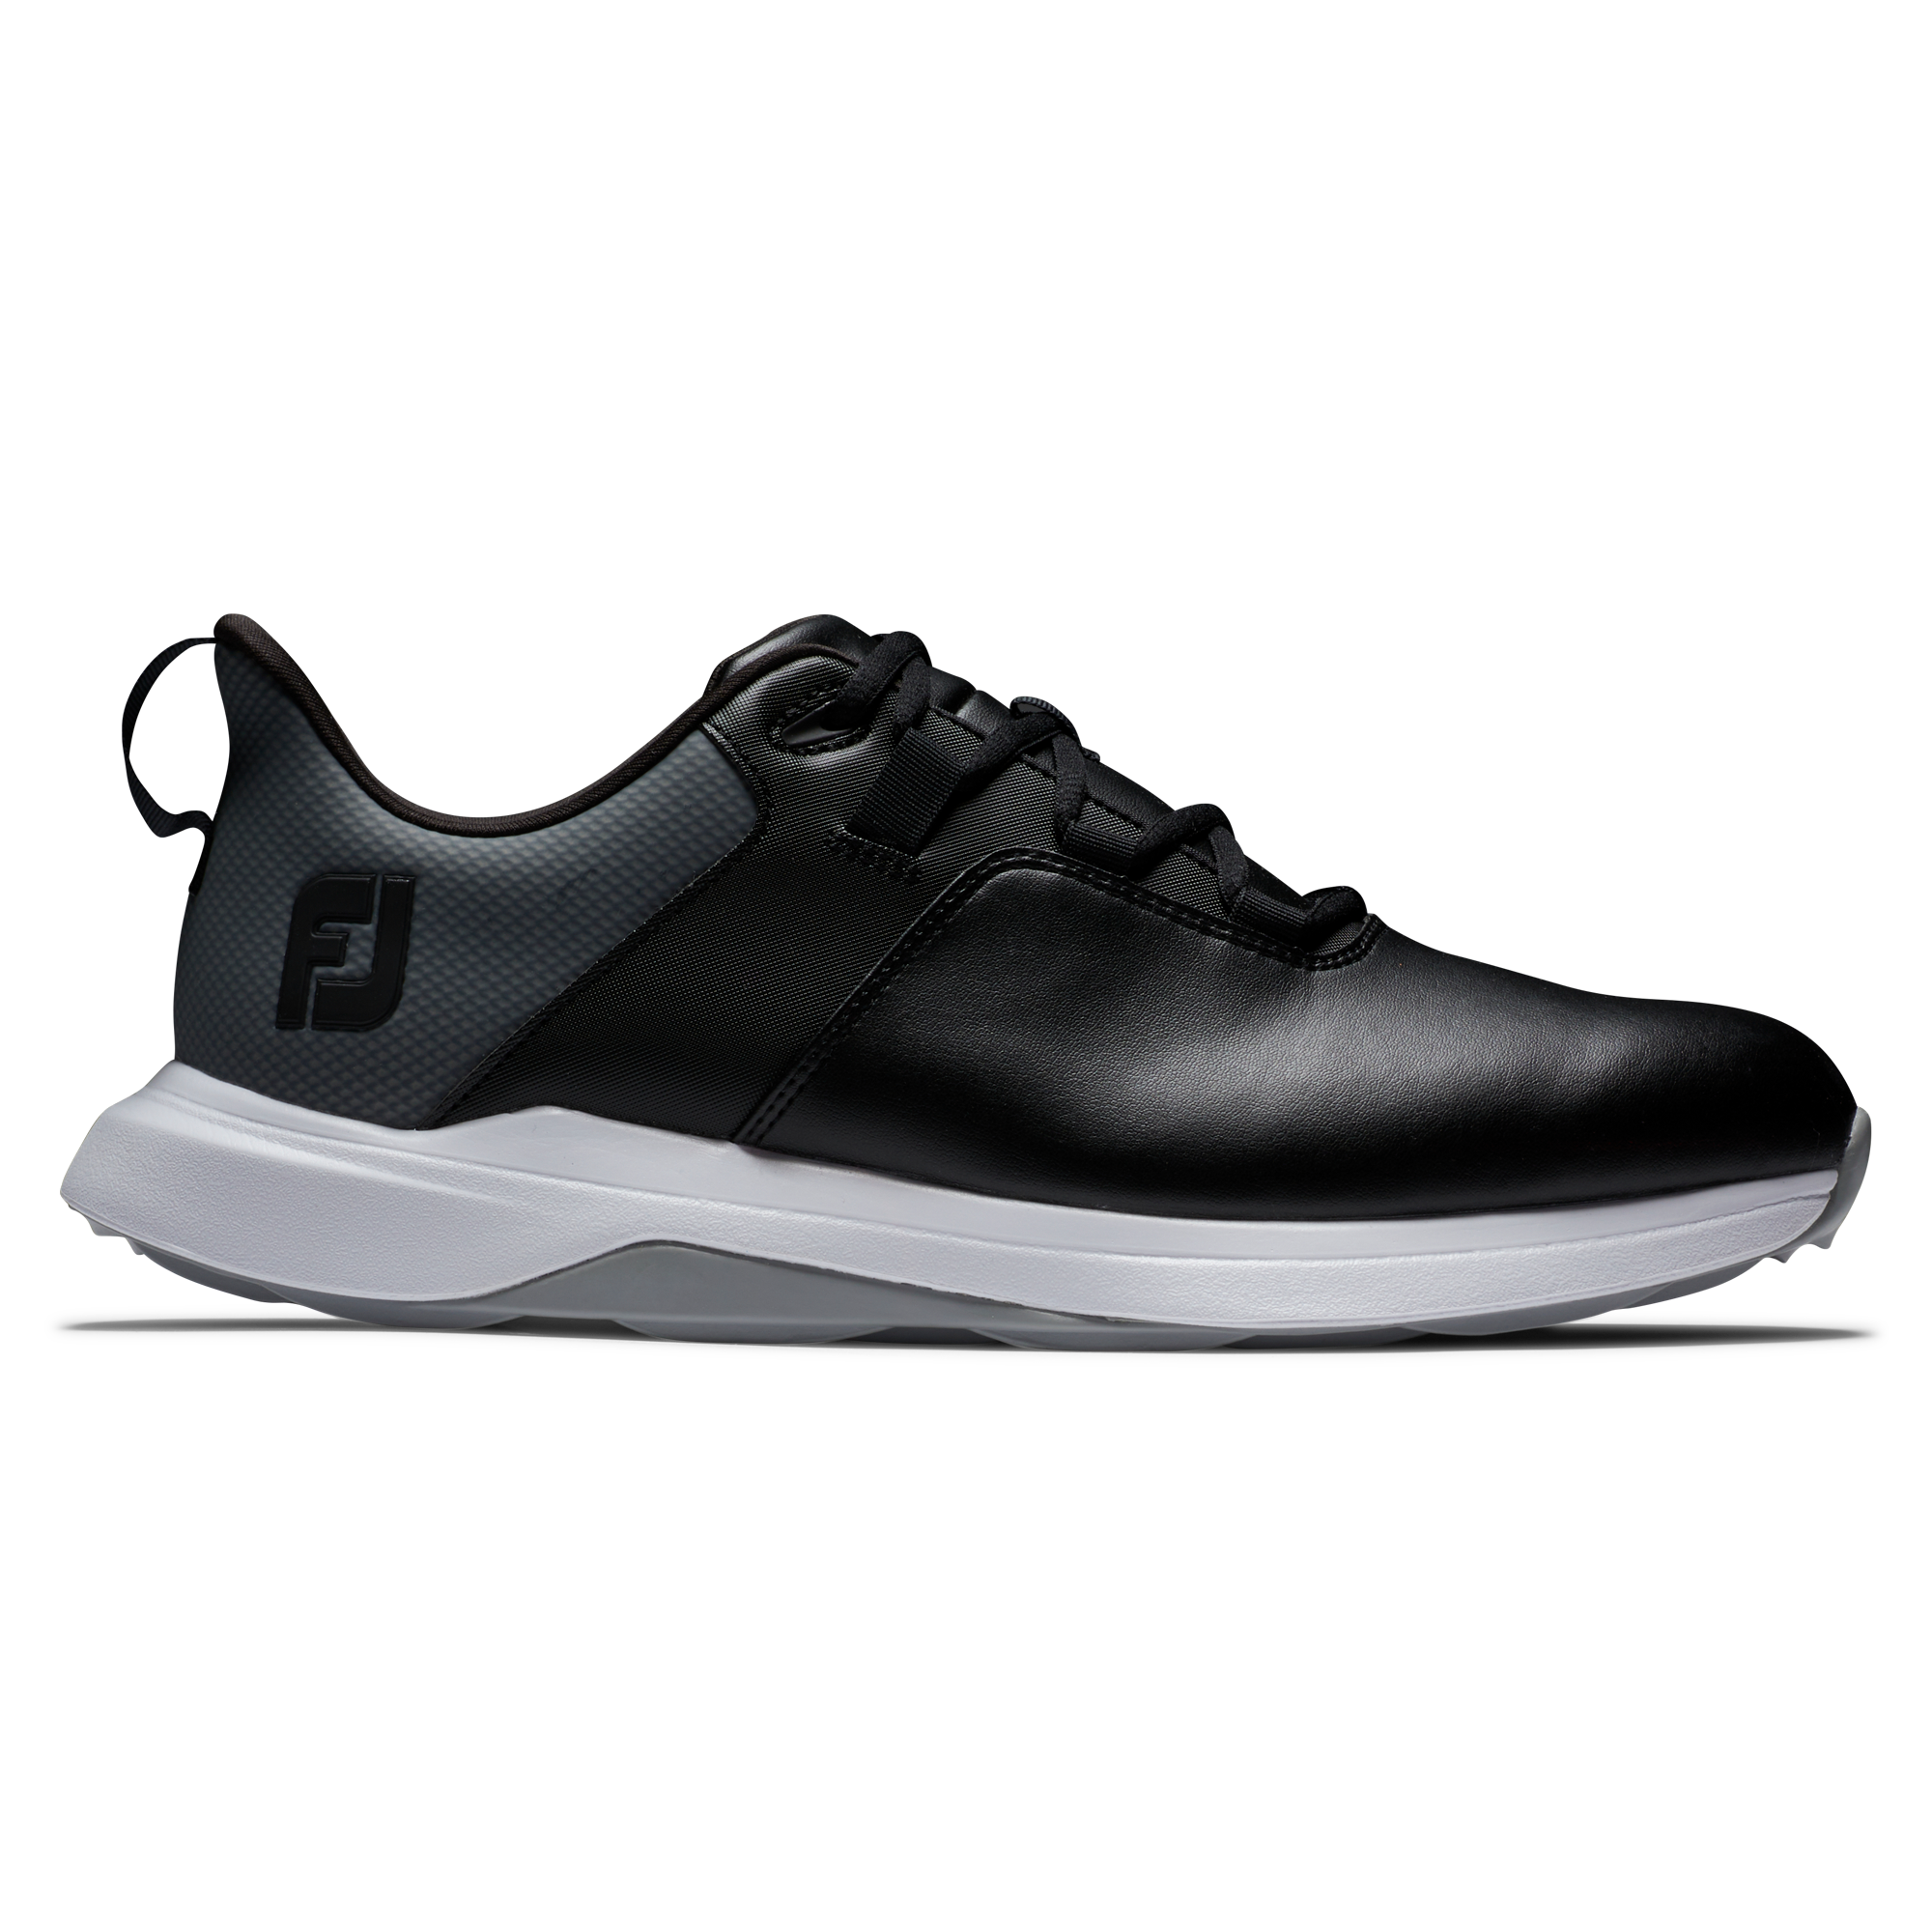 FootJoy ProLite pánské golfové boty, černé, vel. 10 UK